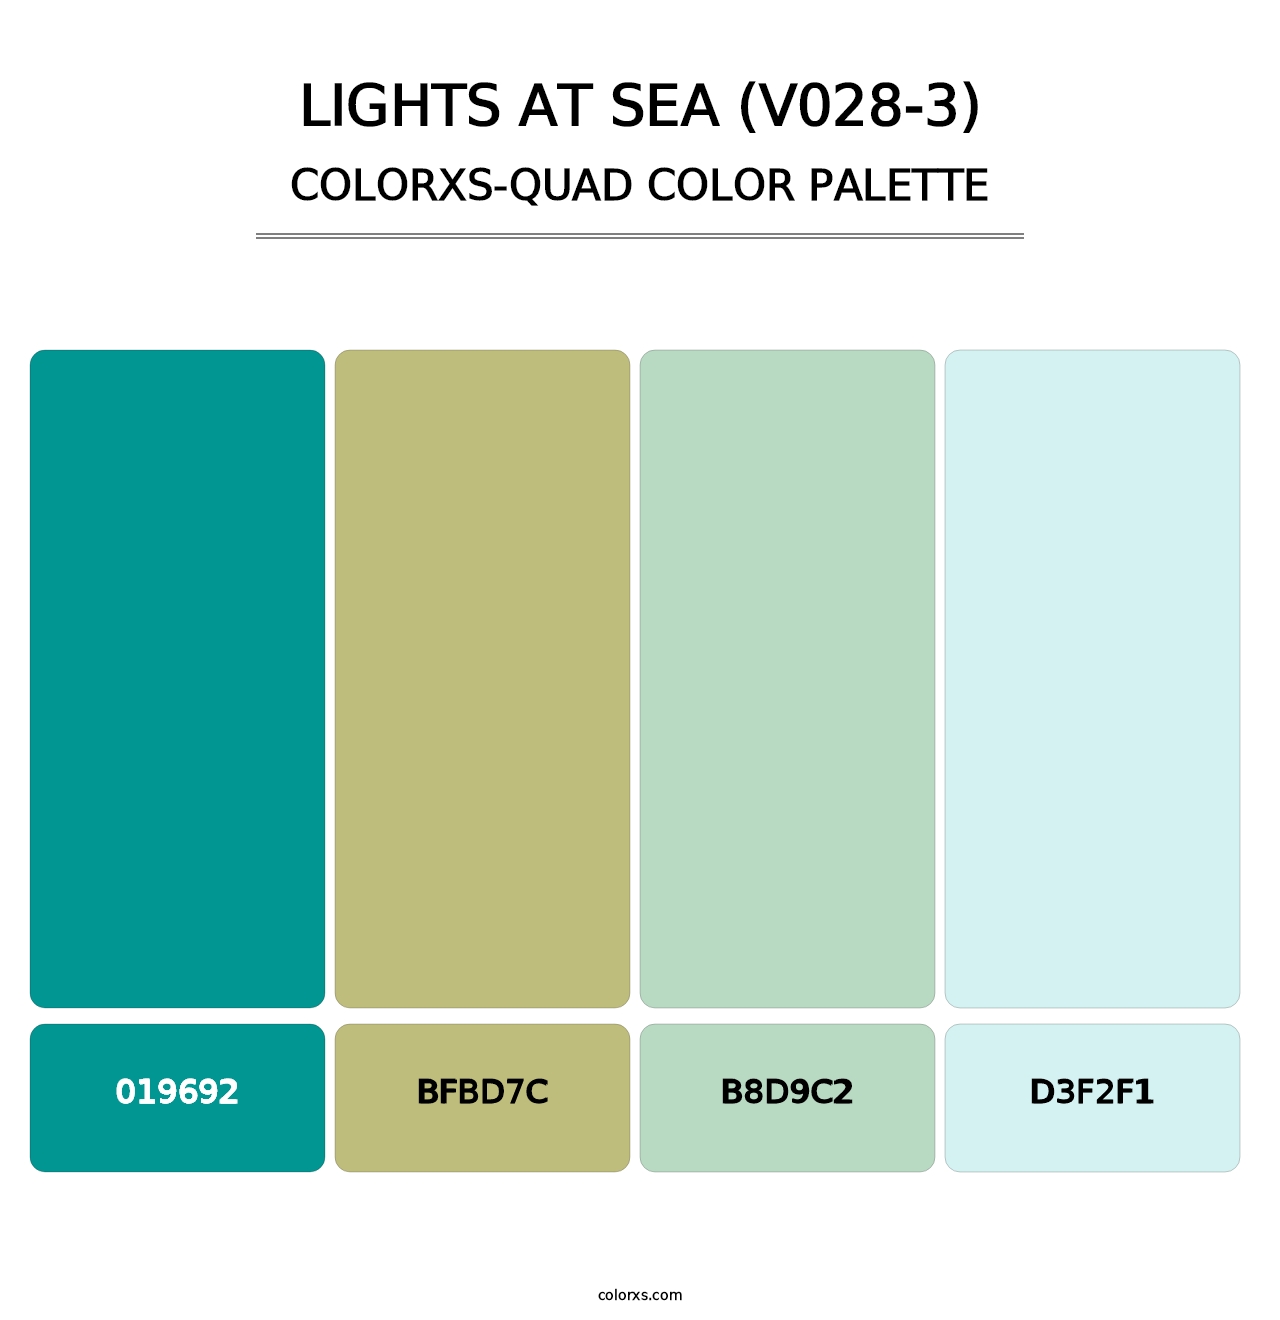 Lights at Sea (V028-3) - Colorxs Quad Palette